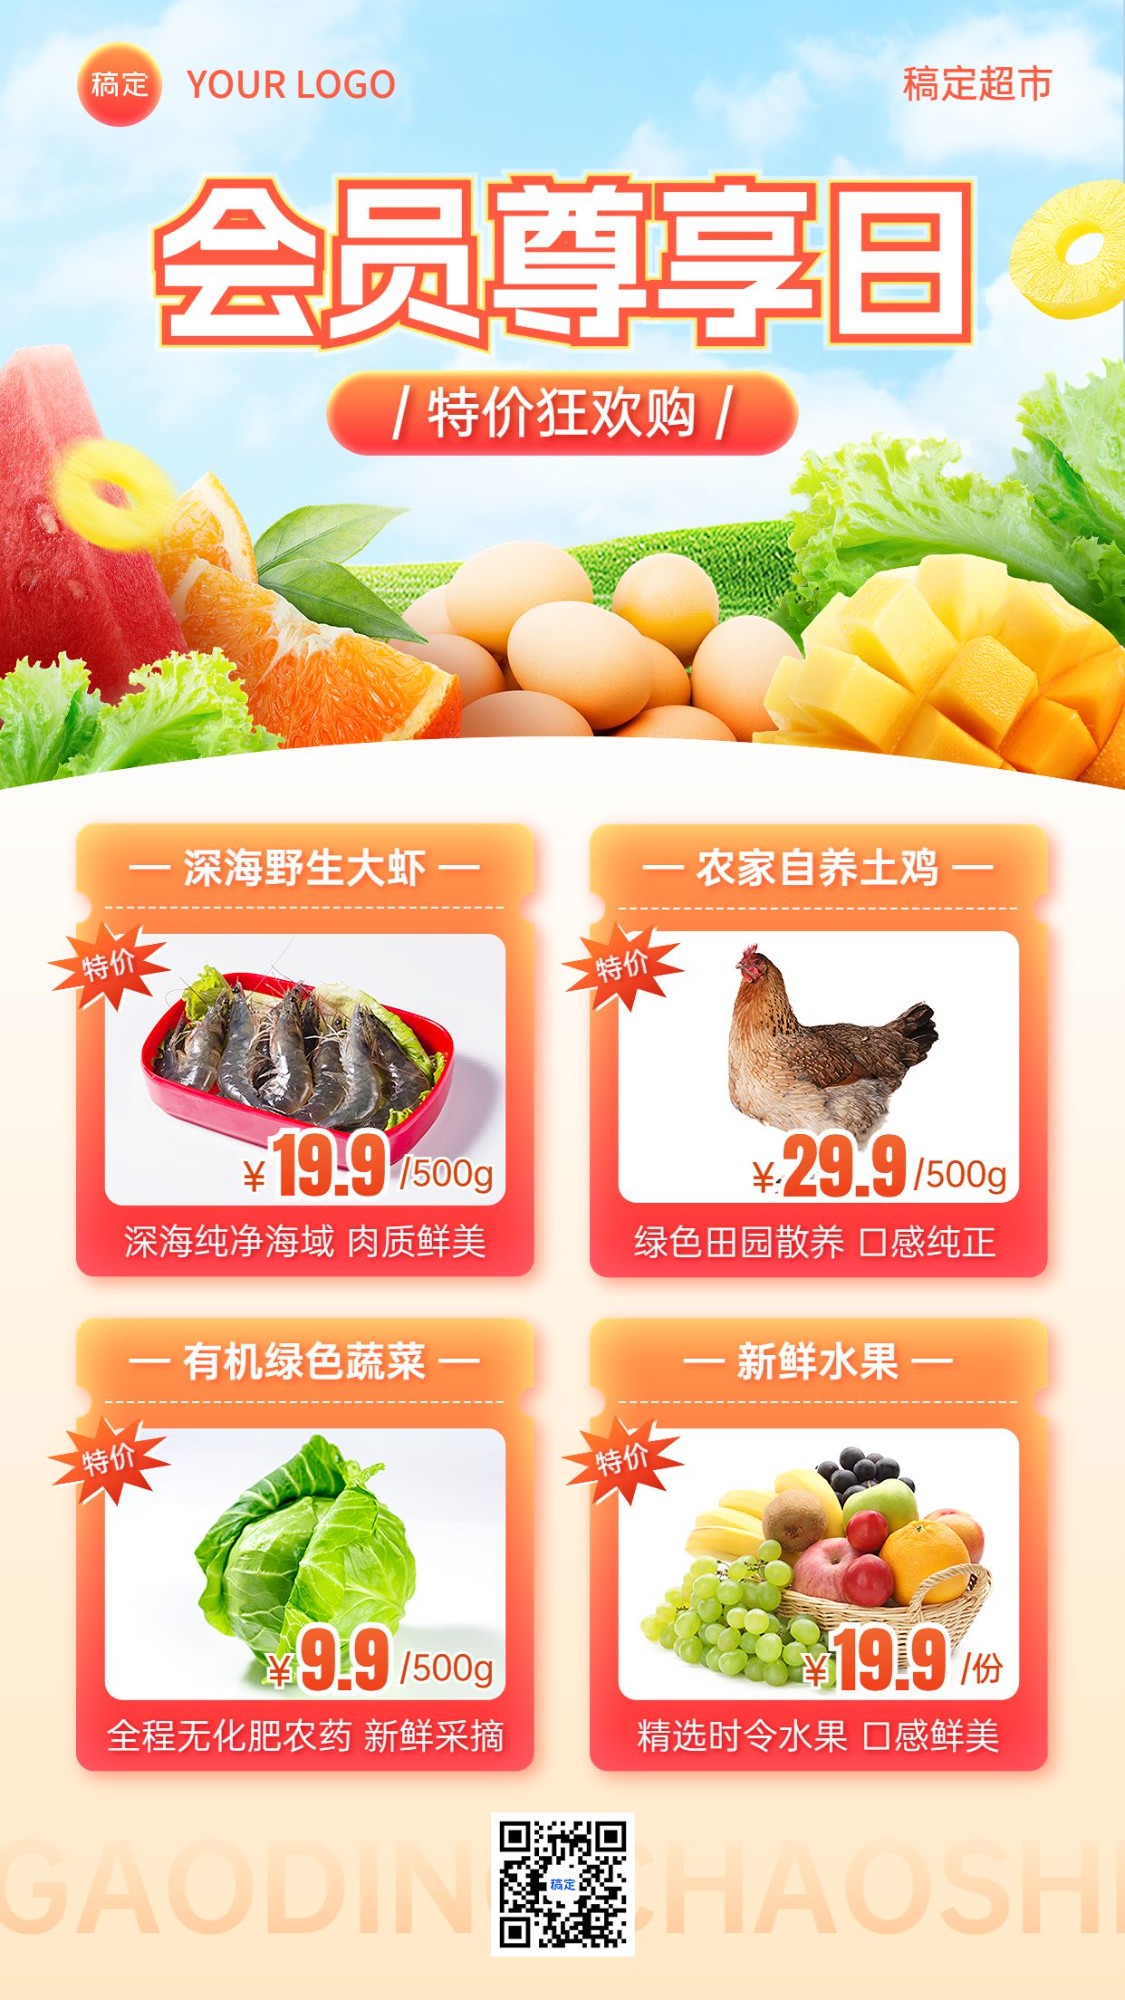 食品生鲜超市便利店多图框会员日营销促销手机海报预览效果